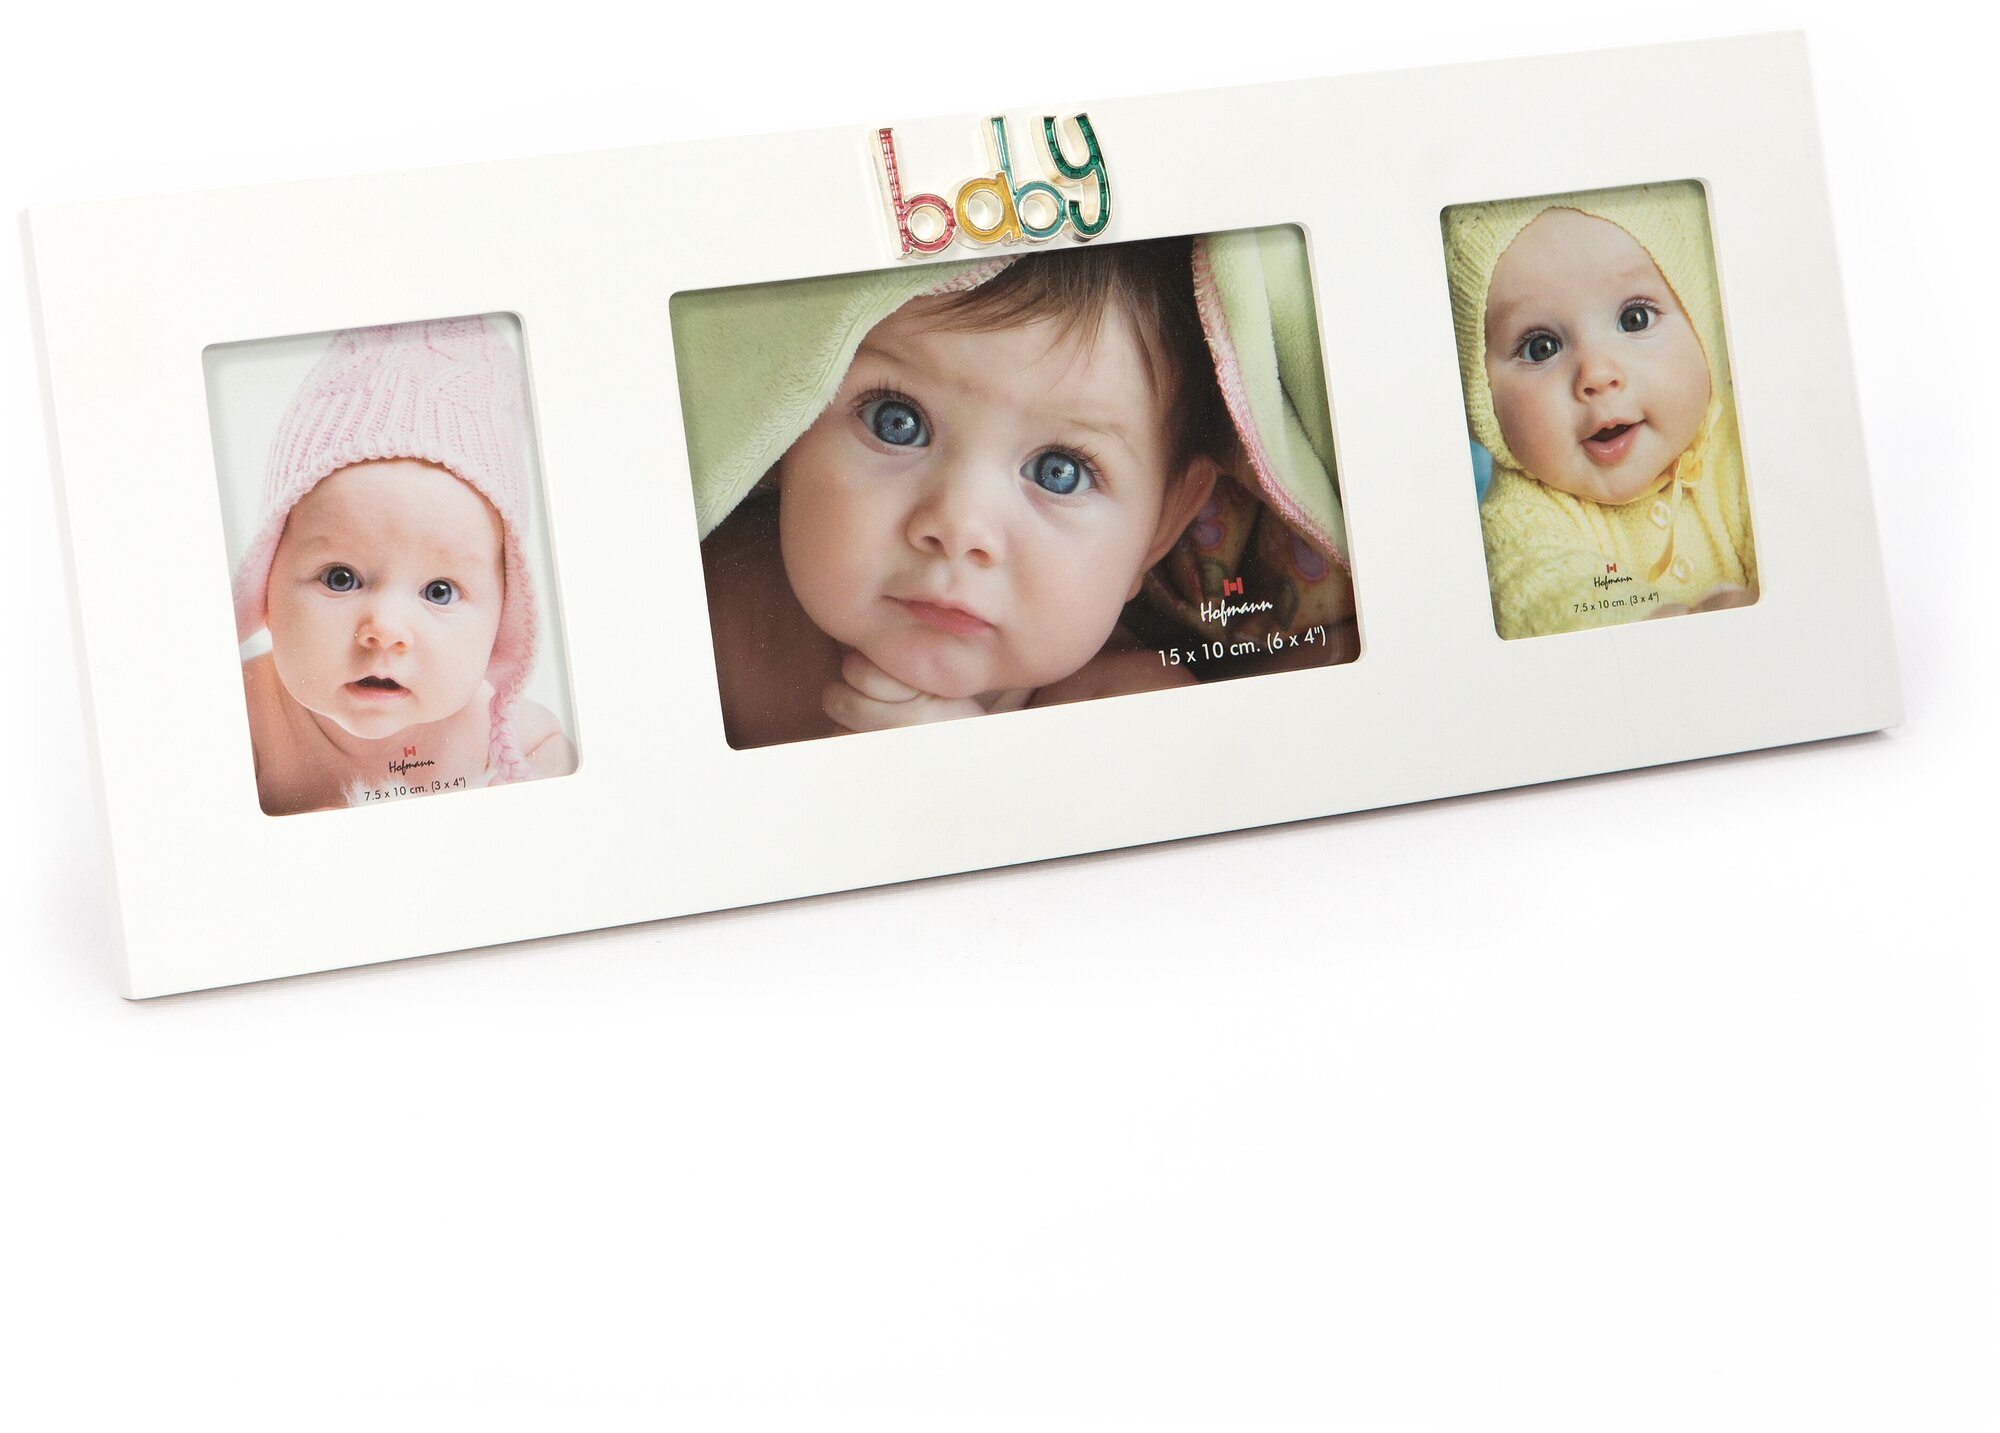 Детская фоторамка для 3 фотографий, мультирамка-коллаж, baby, белая GF 2956